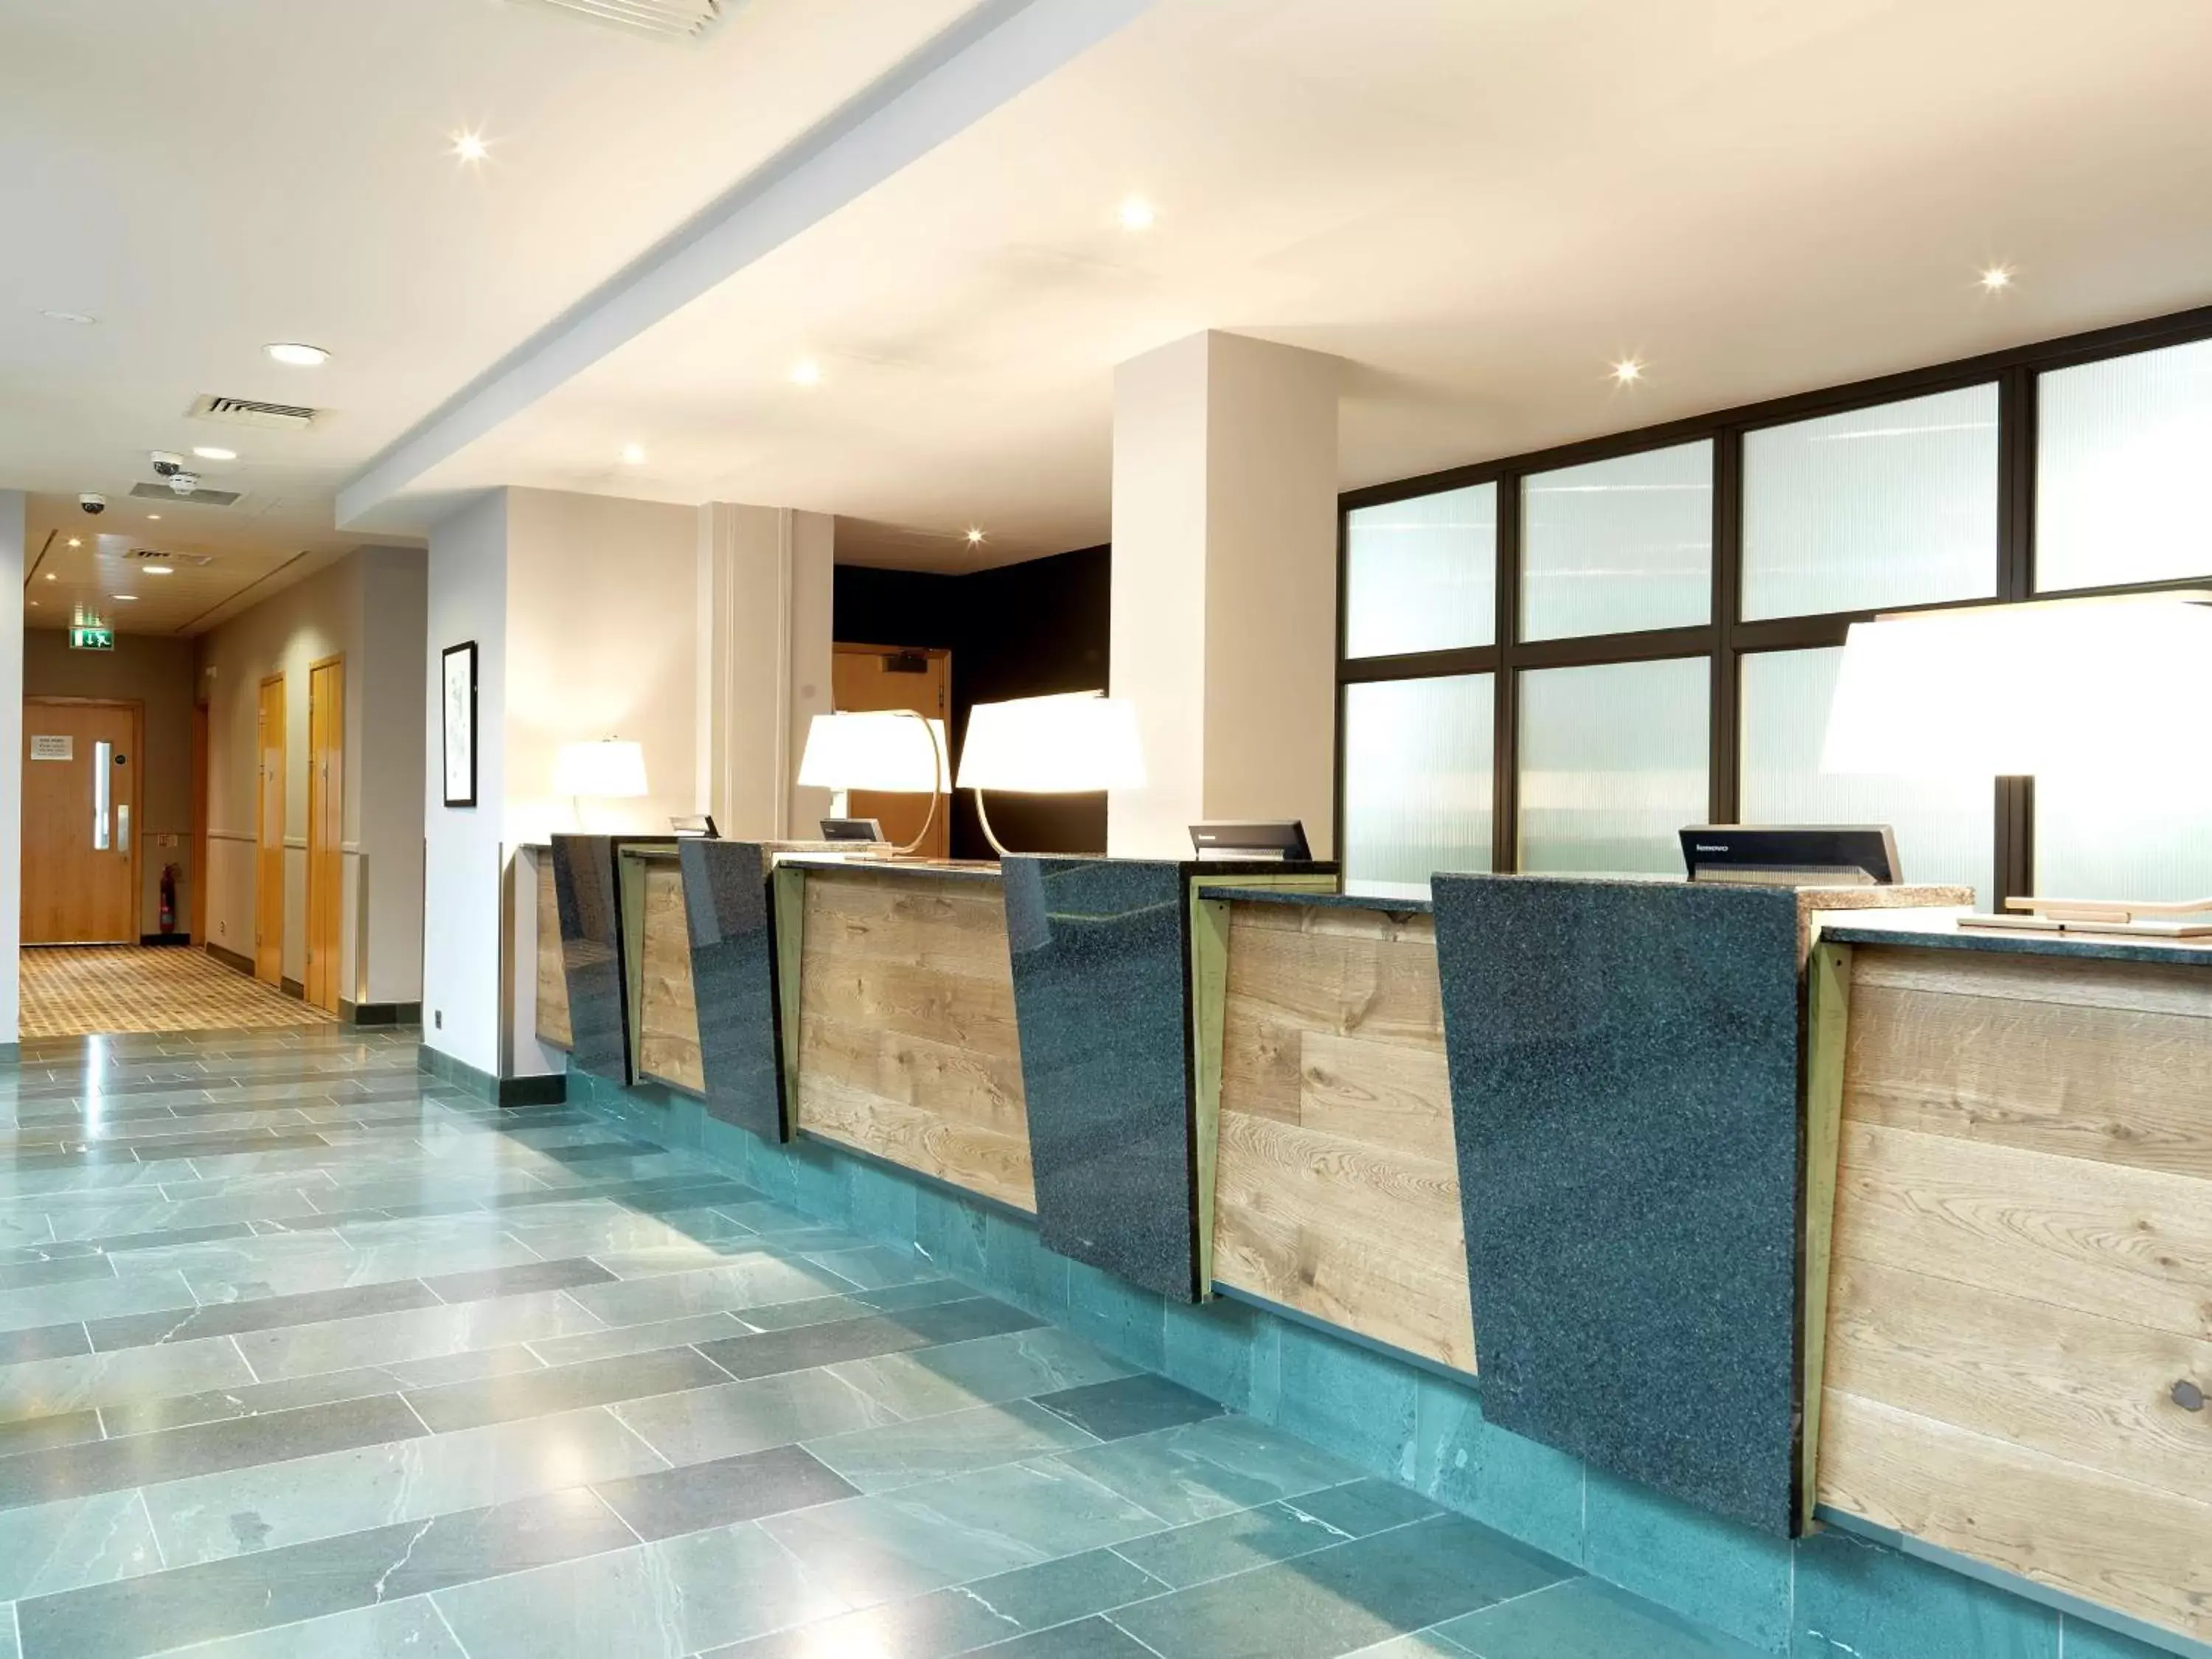 Lobby or reception, Lobby/Reception in Hilton Garden Inn Birmingham Brindley Place